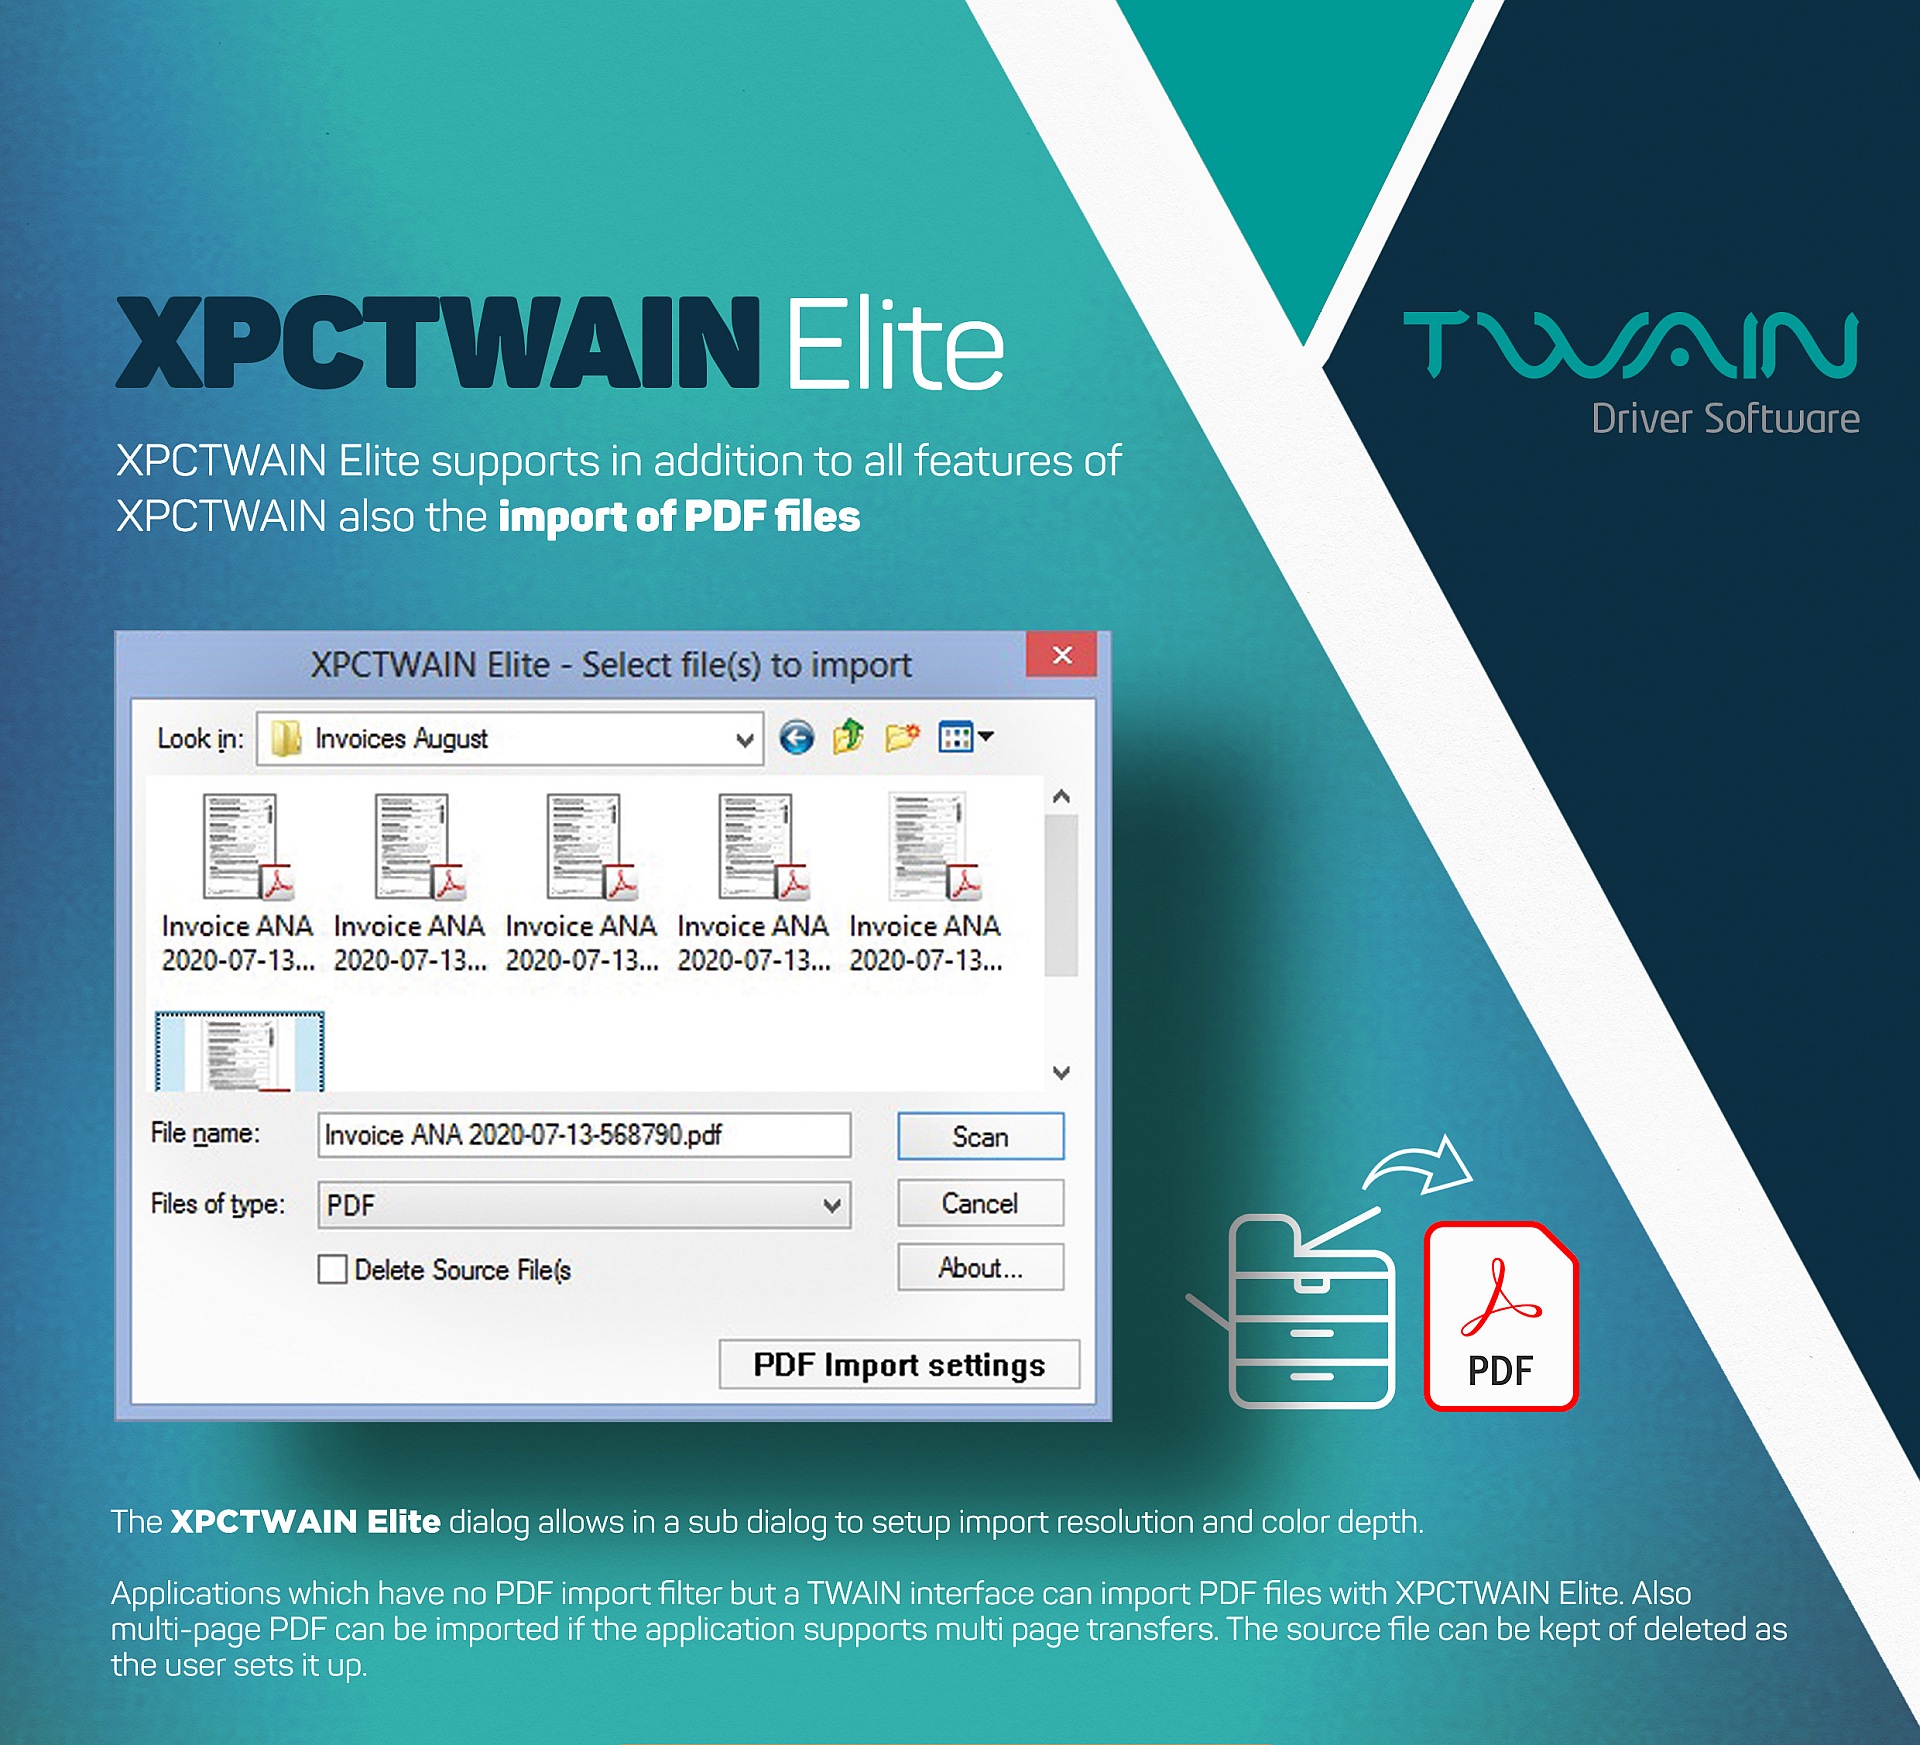 XPCTWAIN Elite ist ein virtueller TWAIN-Treiber, der es Anwendungen, die keinen PDF-Importfilter haben, ermöglicht, PDF für mehrseitige TIFF-Dateien als Bilder über die TWAIN-Standardschnittstelle zu lesen. 
								XPCTWAIN Elite est un pilote TWAIN virtuel qui permet aux applications qui n'ont pas de filtre d'importation PDF de lire les fichiers TIFF multipages comme des images via l'interface standard TWAIN.
								XPCTWAIN Elite es un controlador TWAIN virtual que permite a las aplicaciones que no tienen filtro de importación de PDF leer archivos TIFF multipágina como imágenes a través de la interfaz estándar TWAIN.